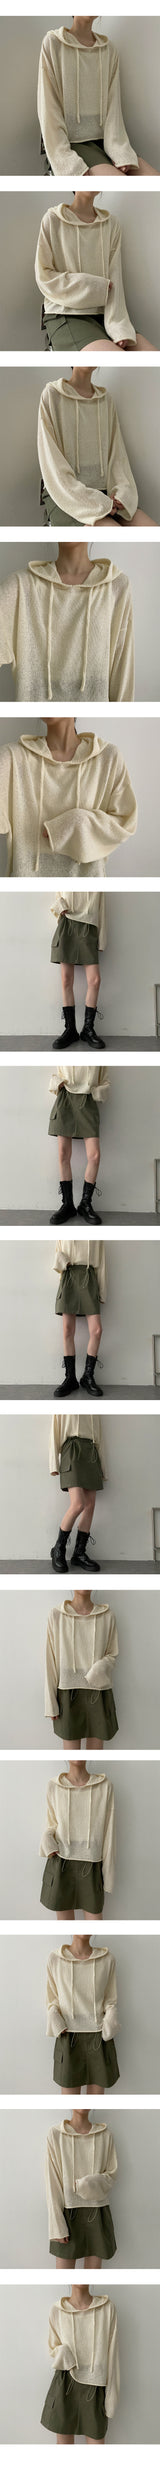 ファーミーウエストストリングカーゴミニスカート / Furme Waist String Cargo Mini Skirt